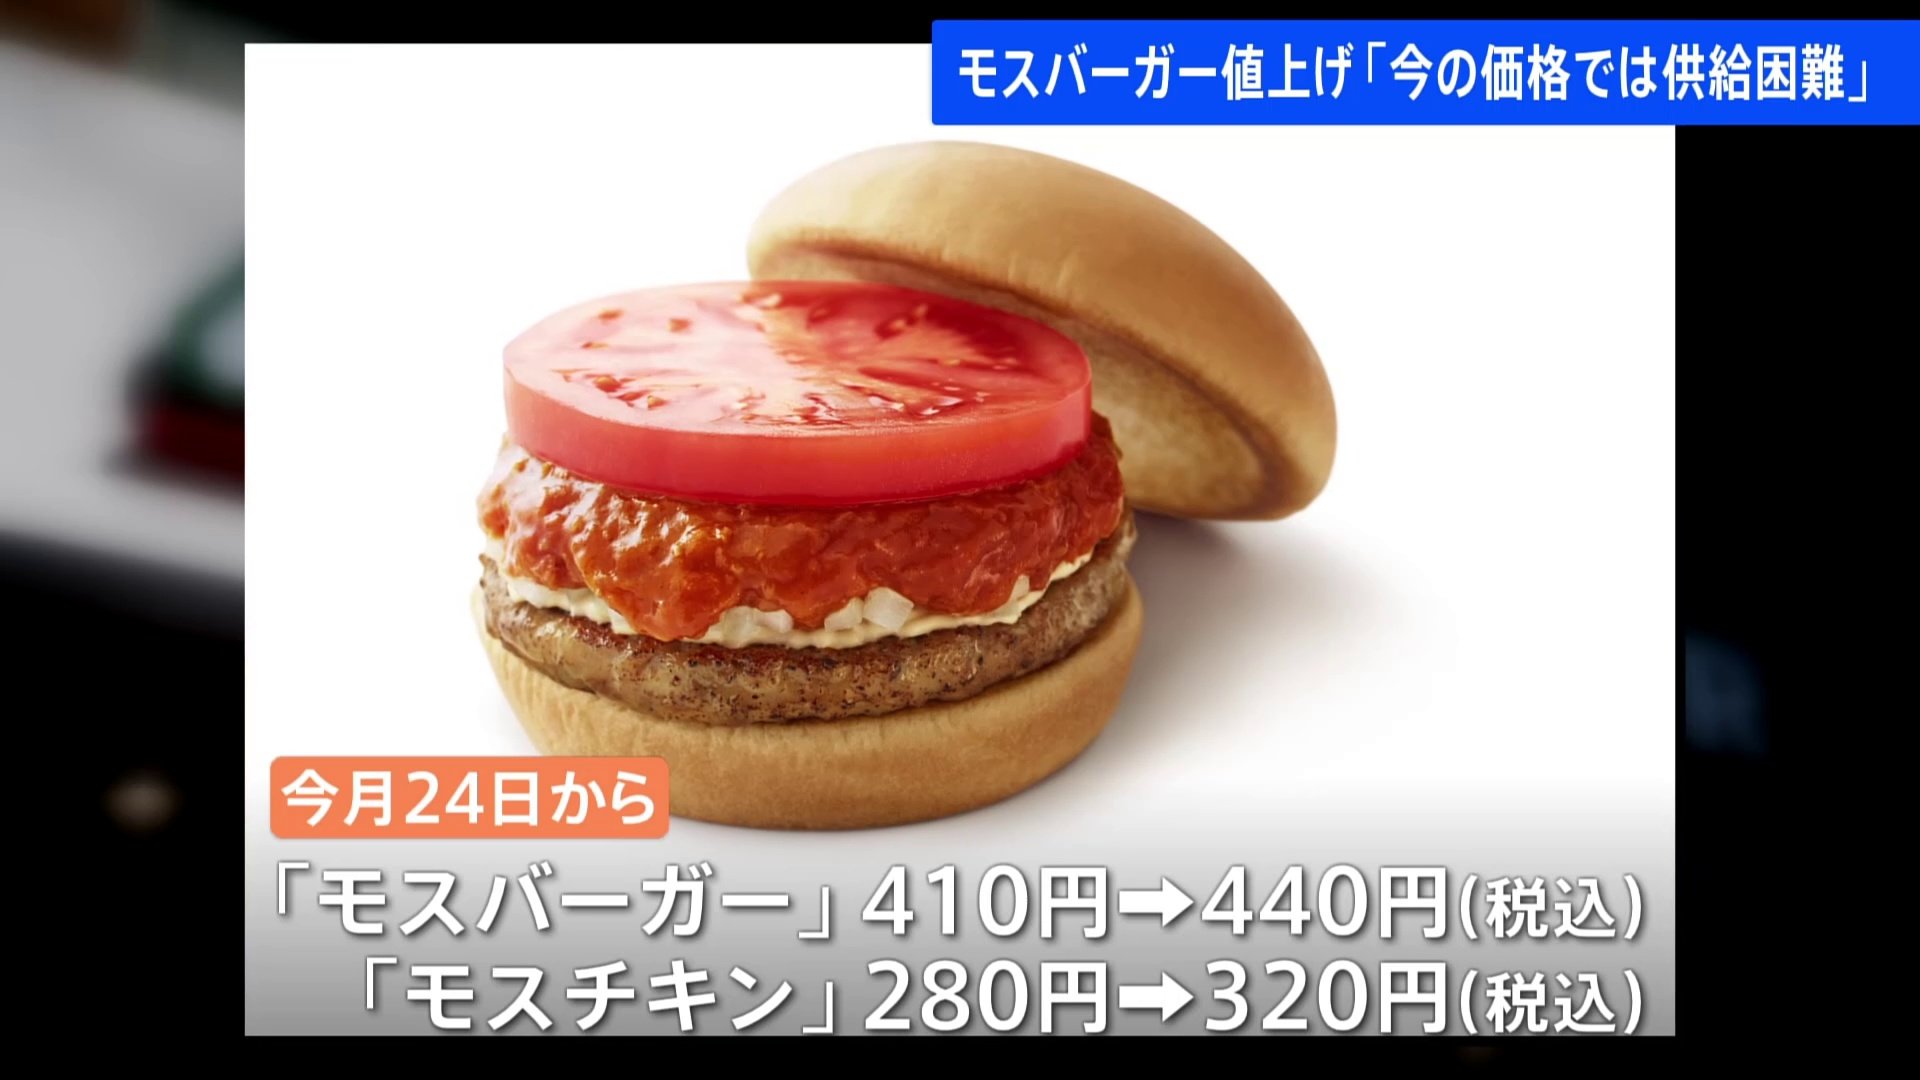 モスバーガーが最大50円値上げ サラダセットは20円値下げ 去年7月にも 